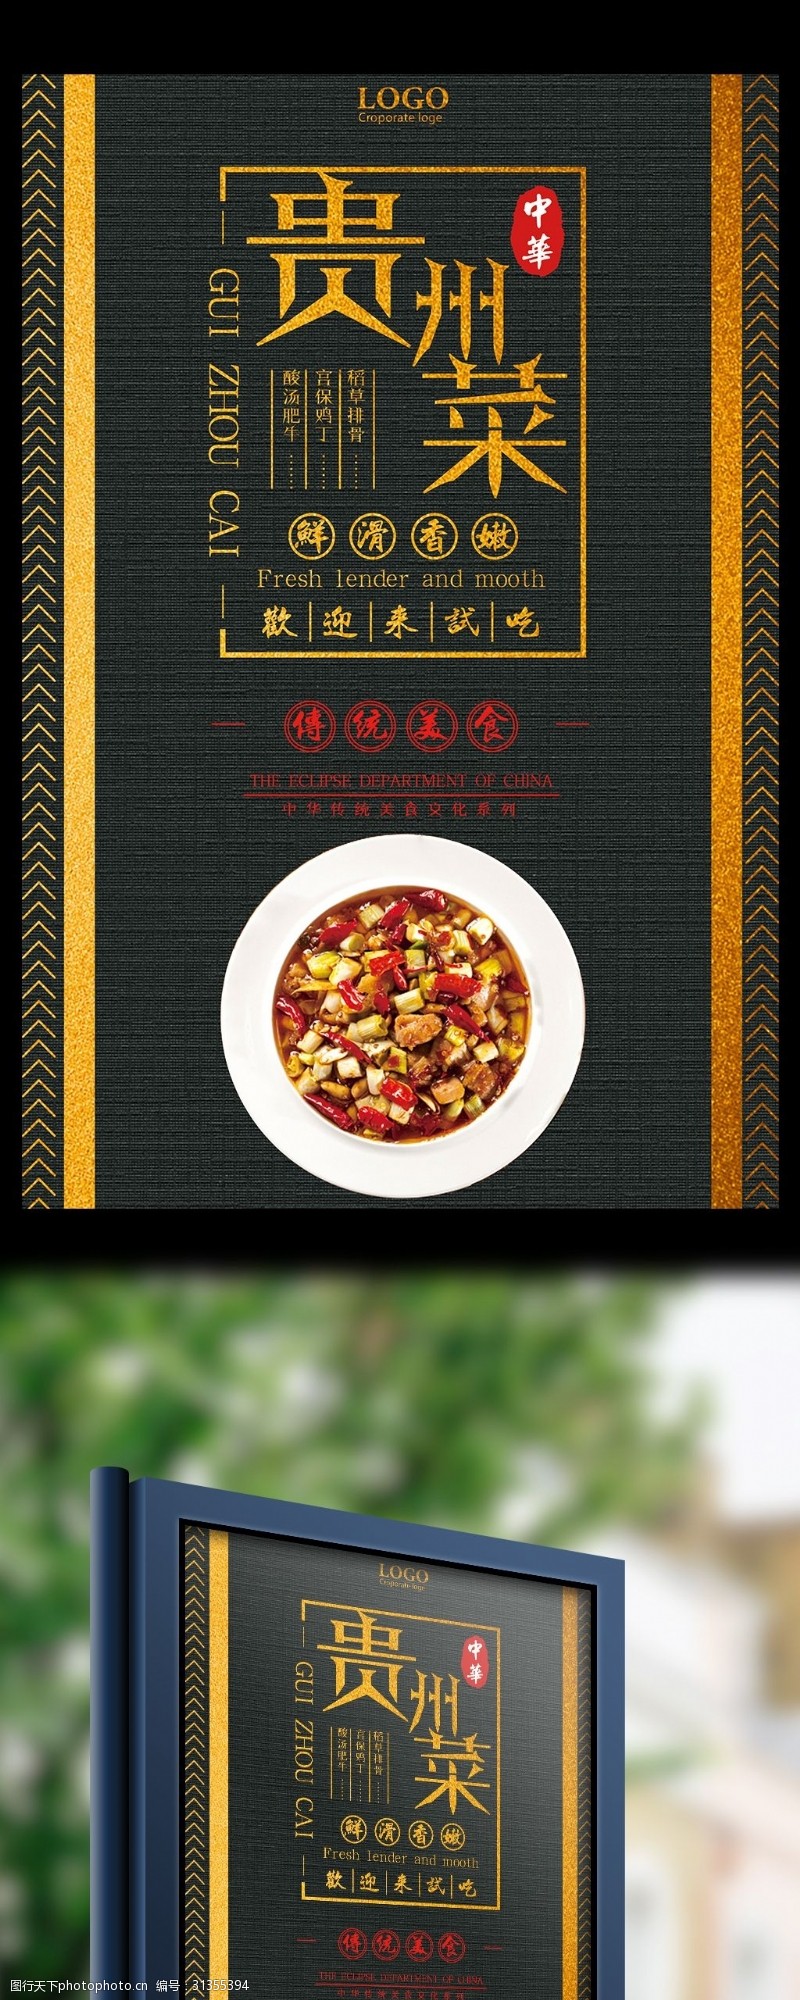 菜单模板贵州菜中华传统美食宣传海报